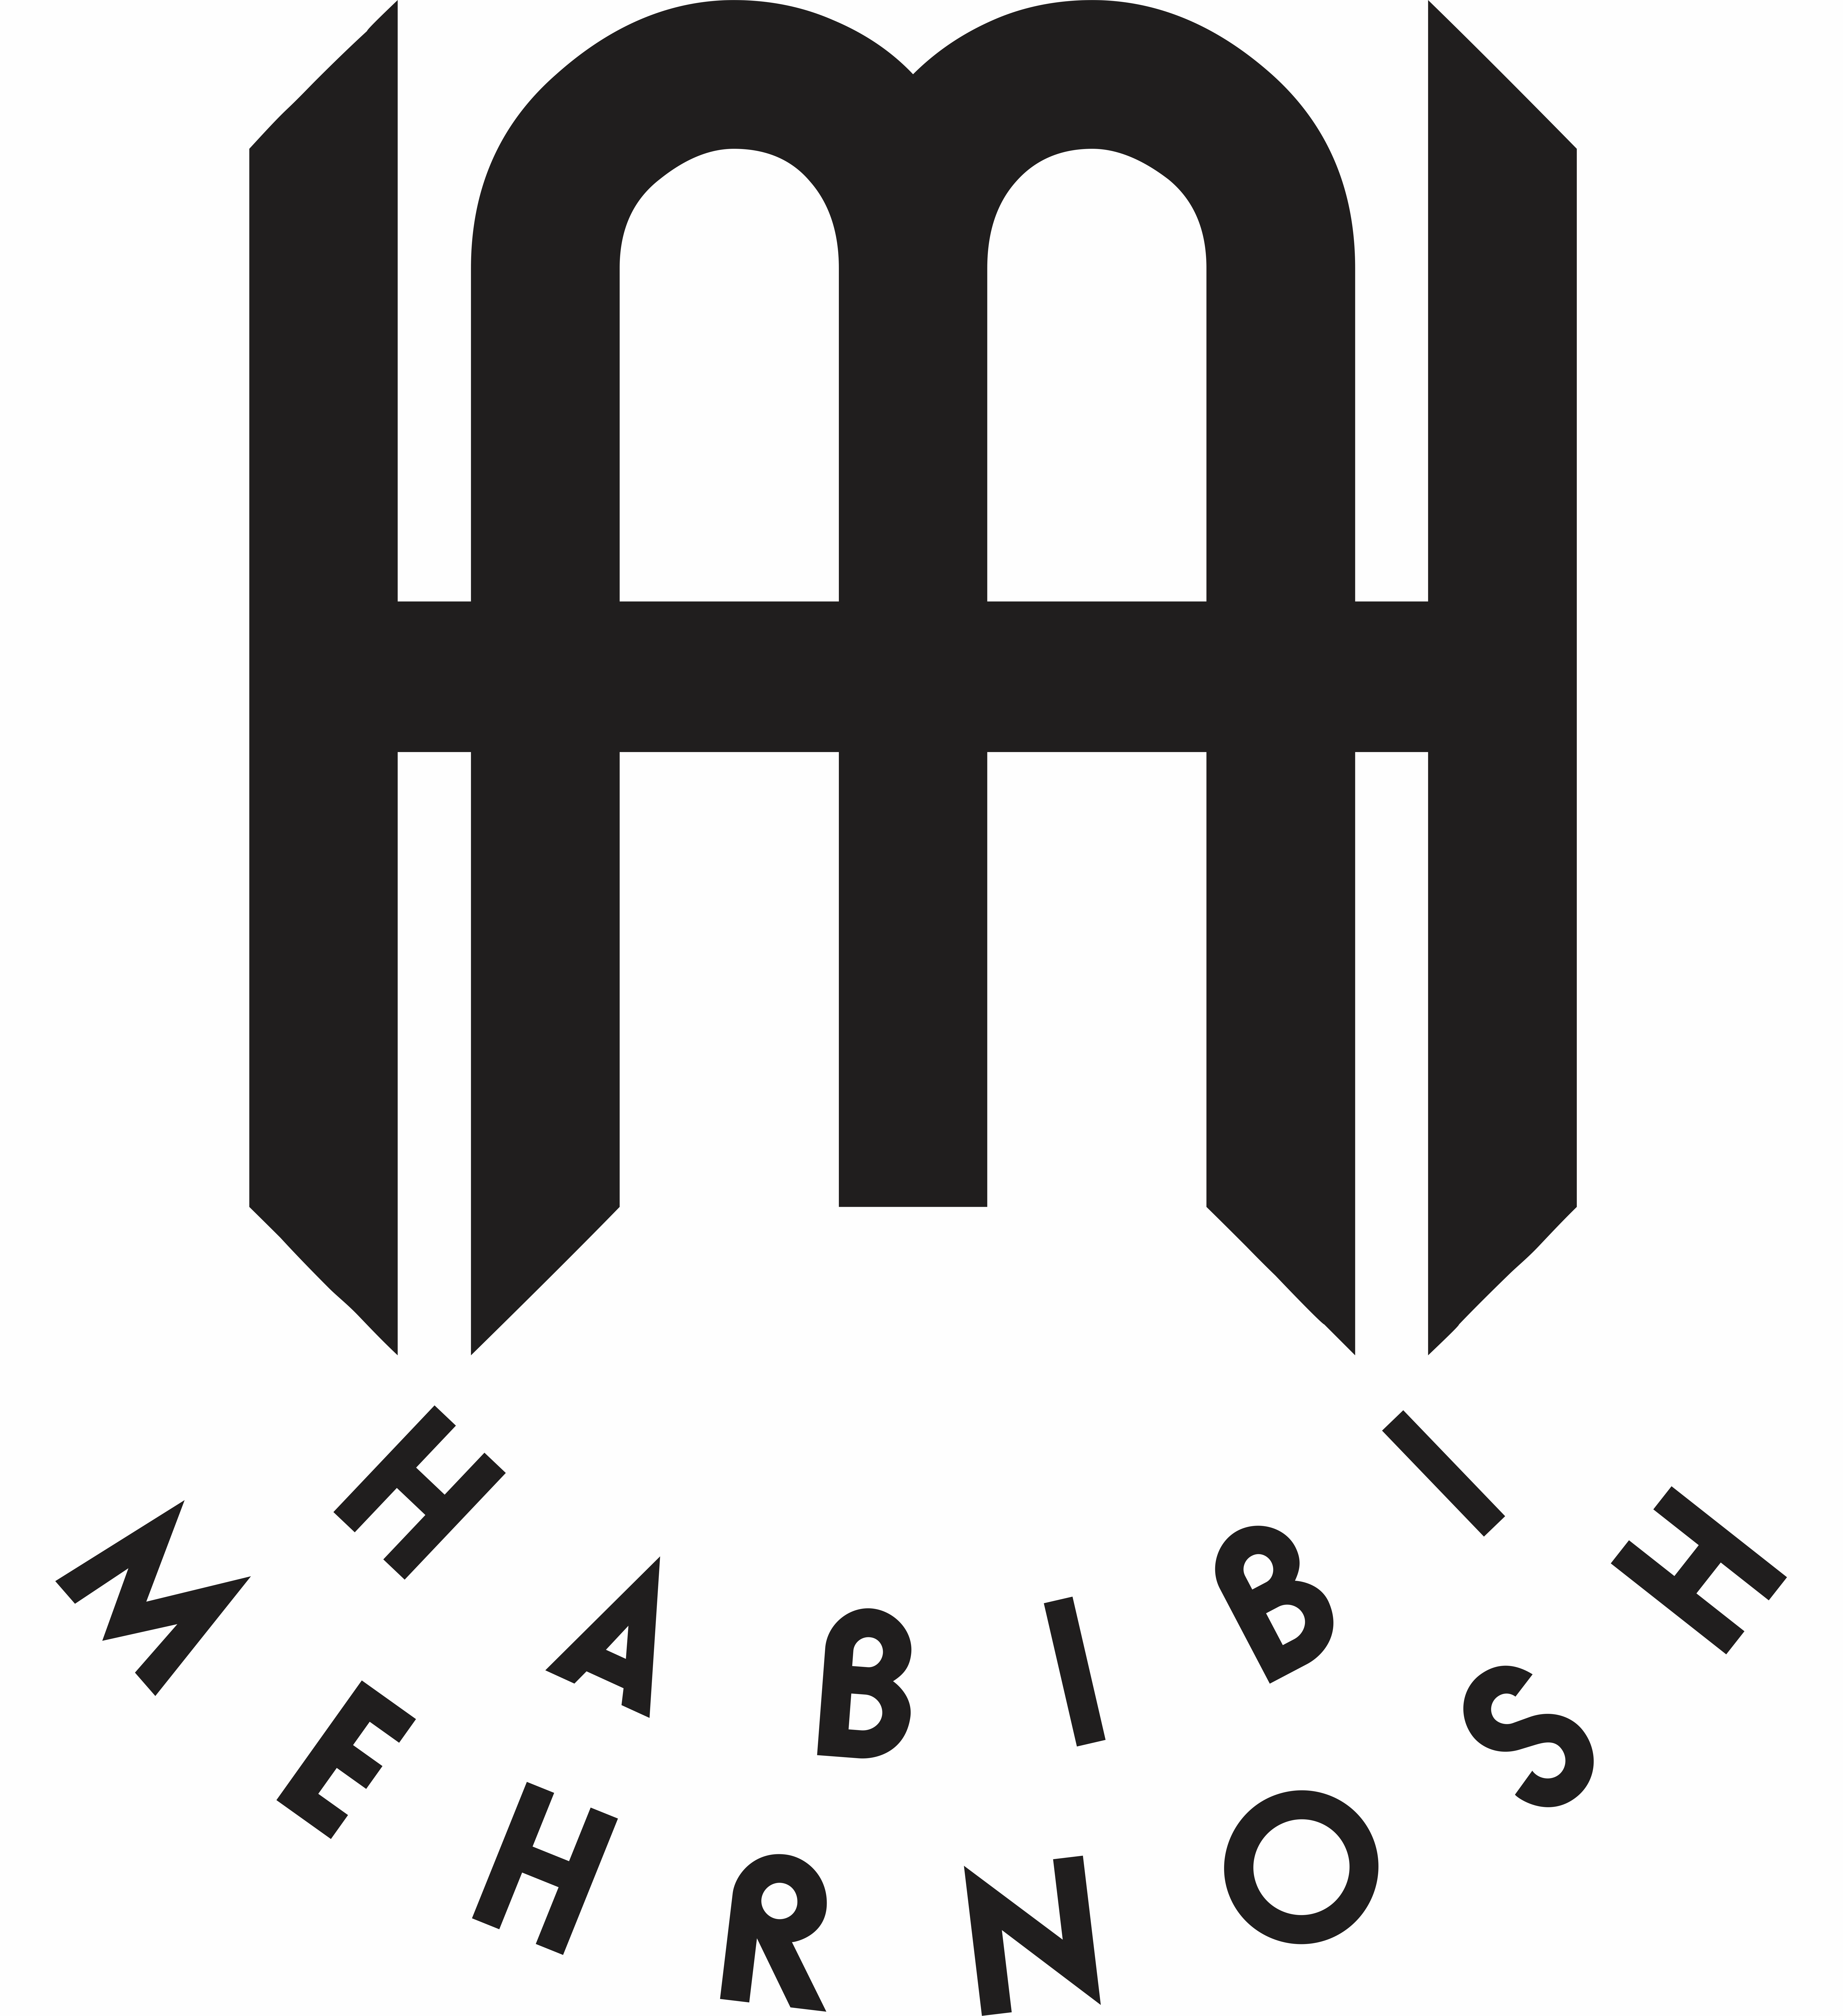 وب سایت اصلی استاد مهرنوش حبیبی